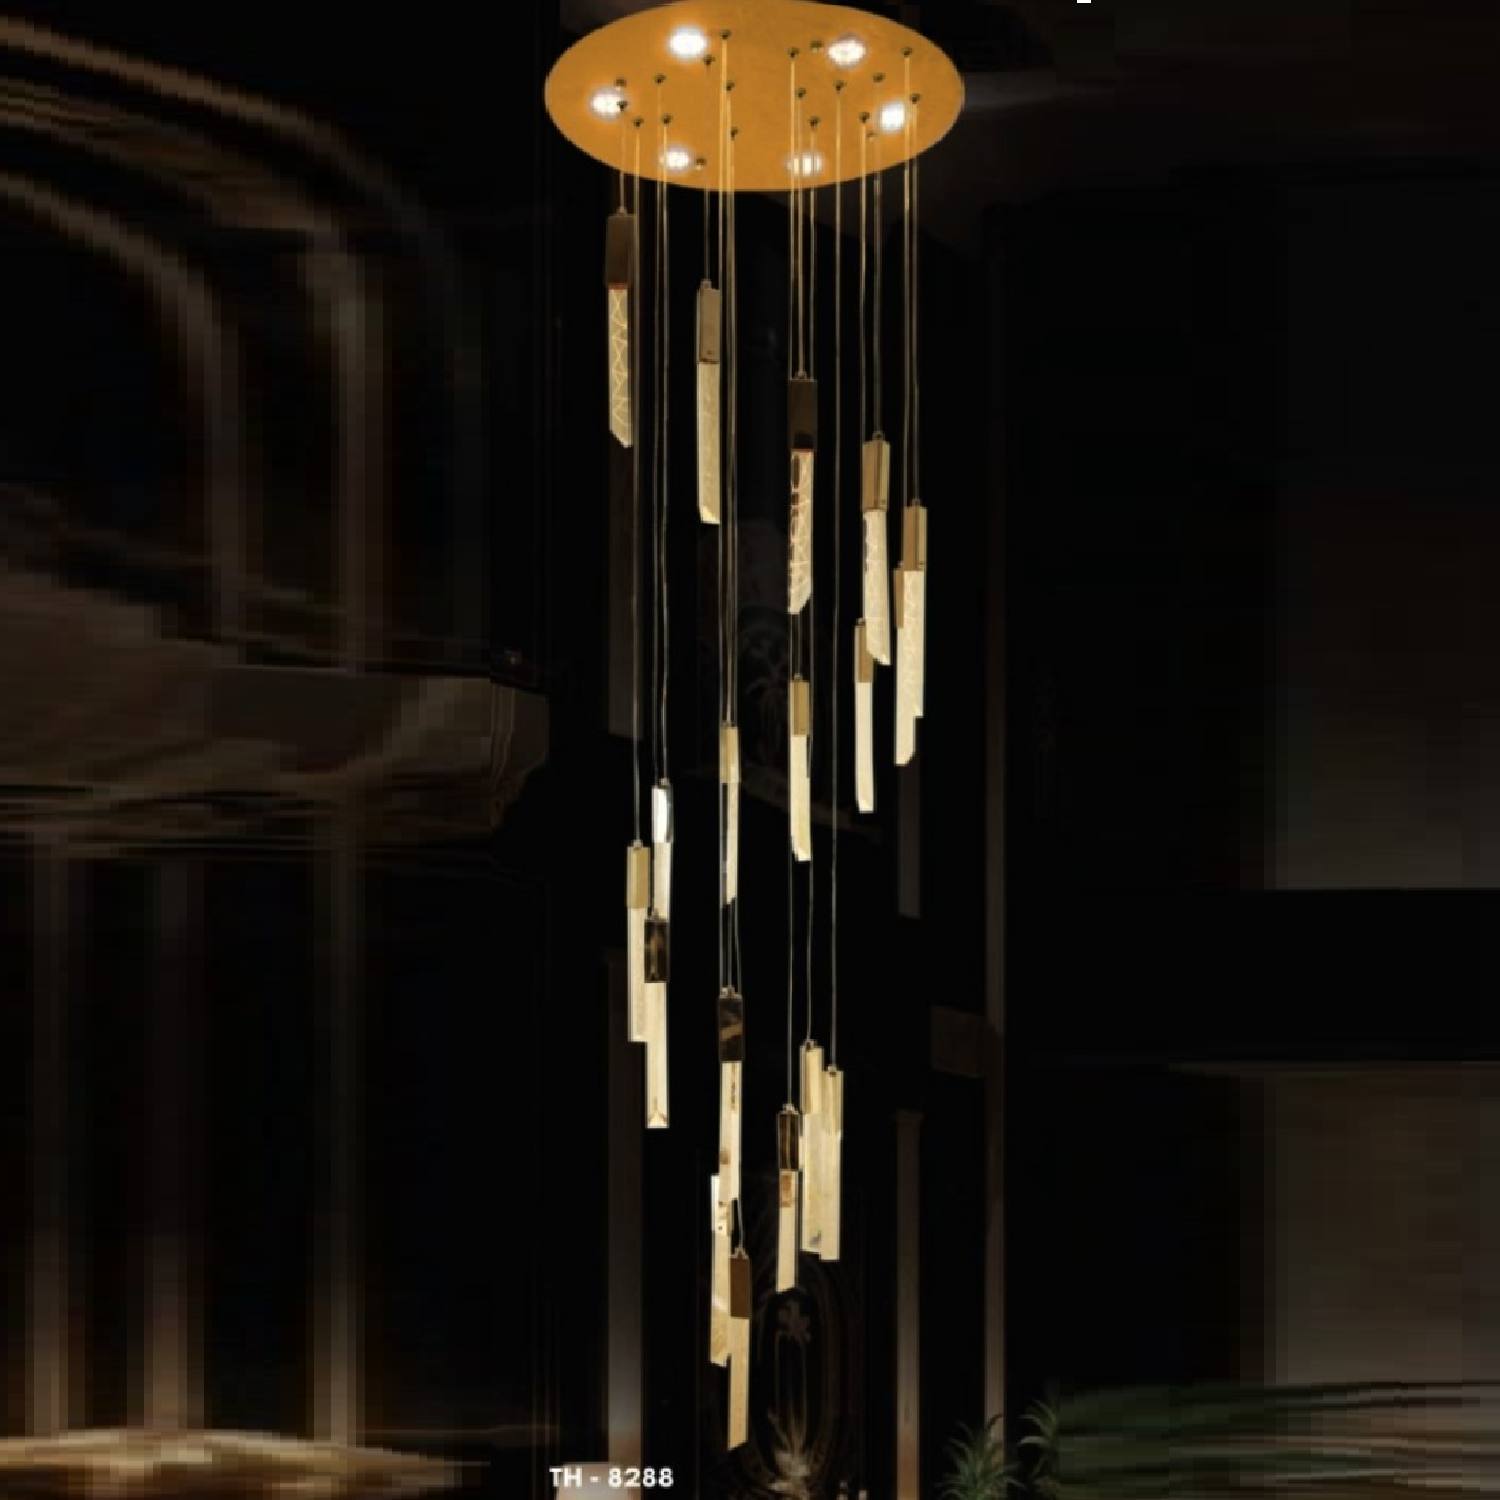 TH - 8288: Đèn thả thanh LED, Viện bạc Titan - KT: Ø600mm x H2500mm - Đèn LED x 18 bóng